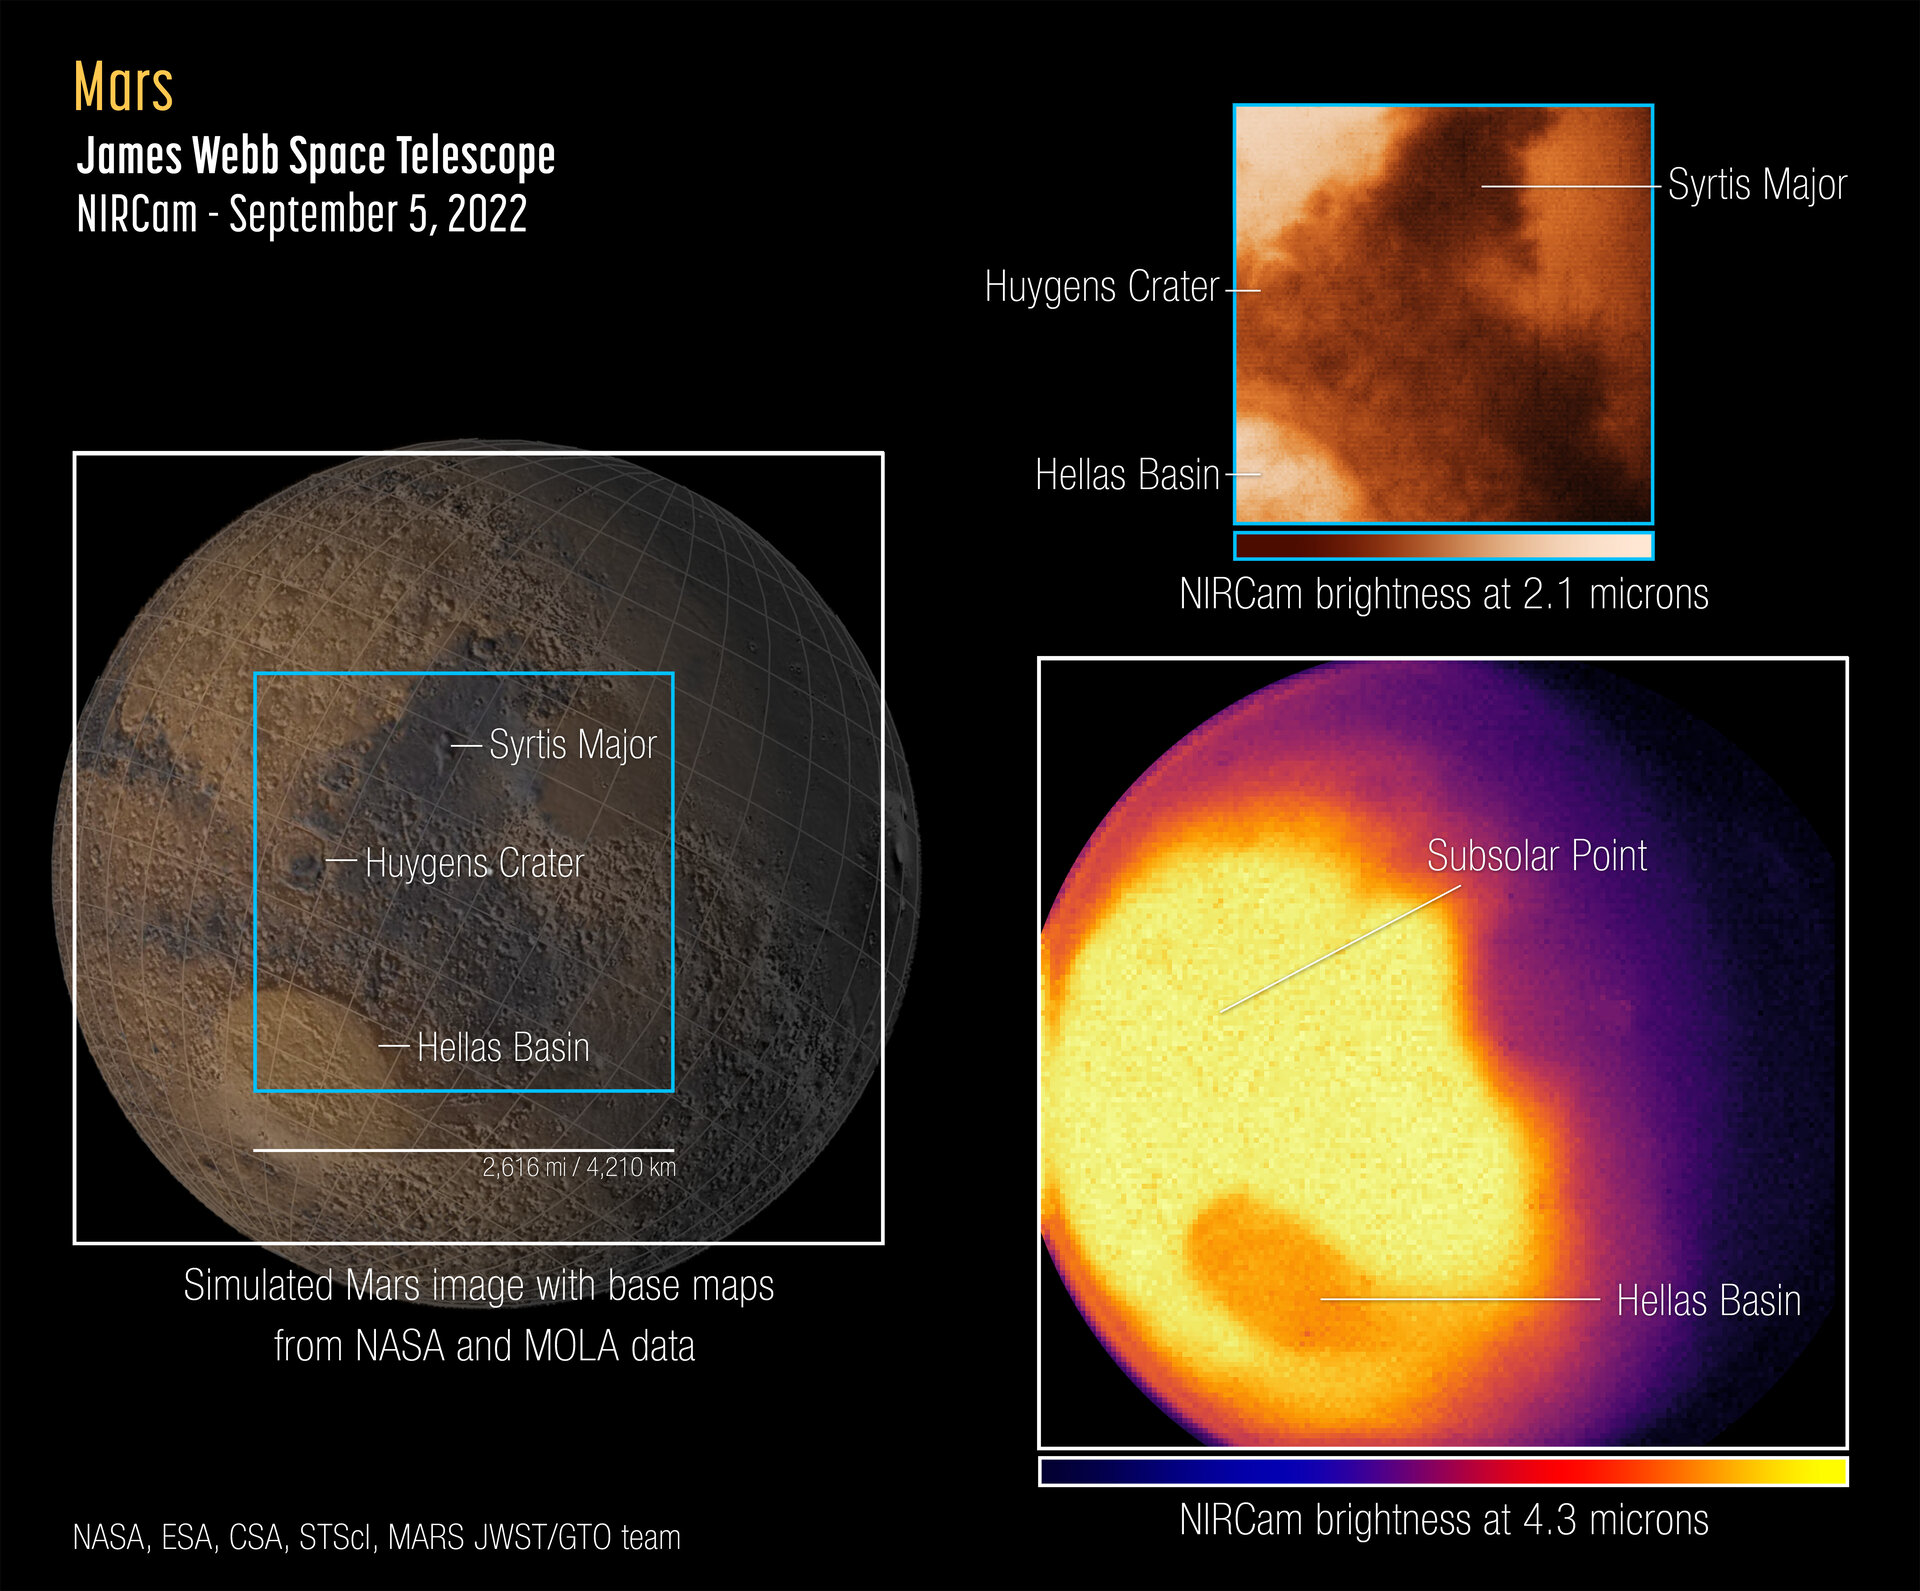 المريخ هو أقوى أول ملاحظات الويب للكوكب الأحمر